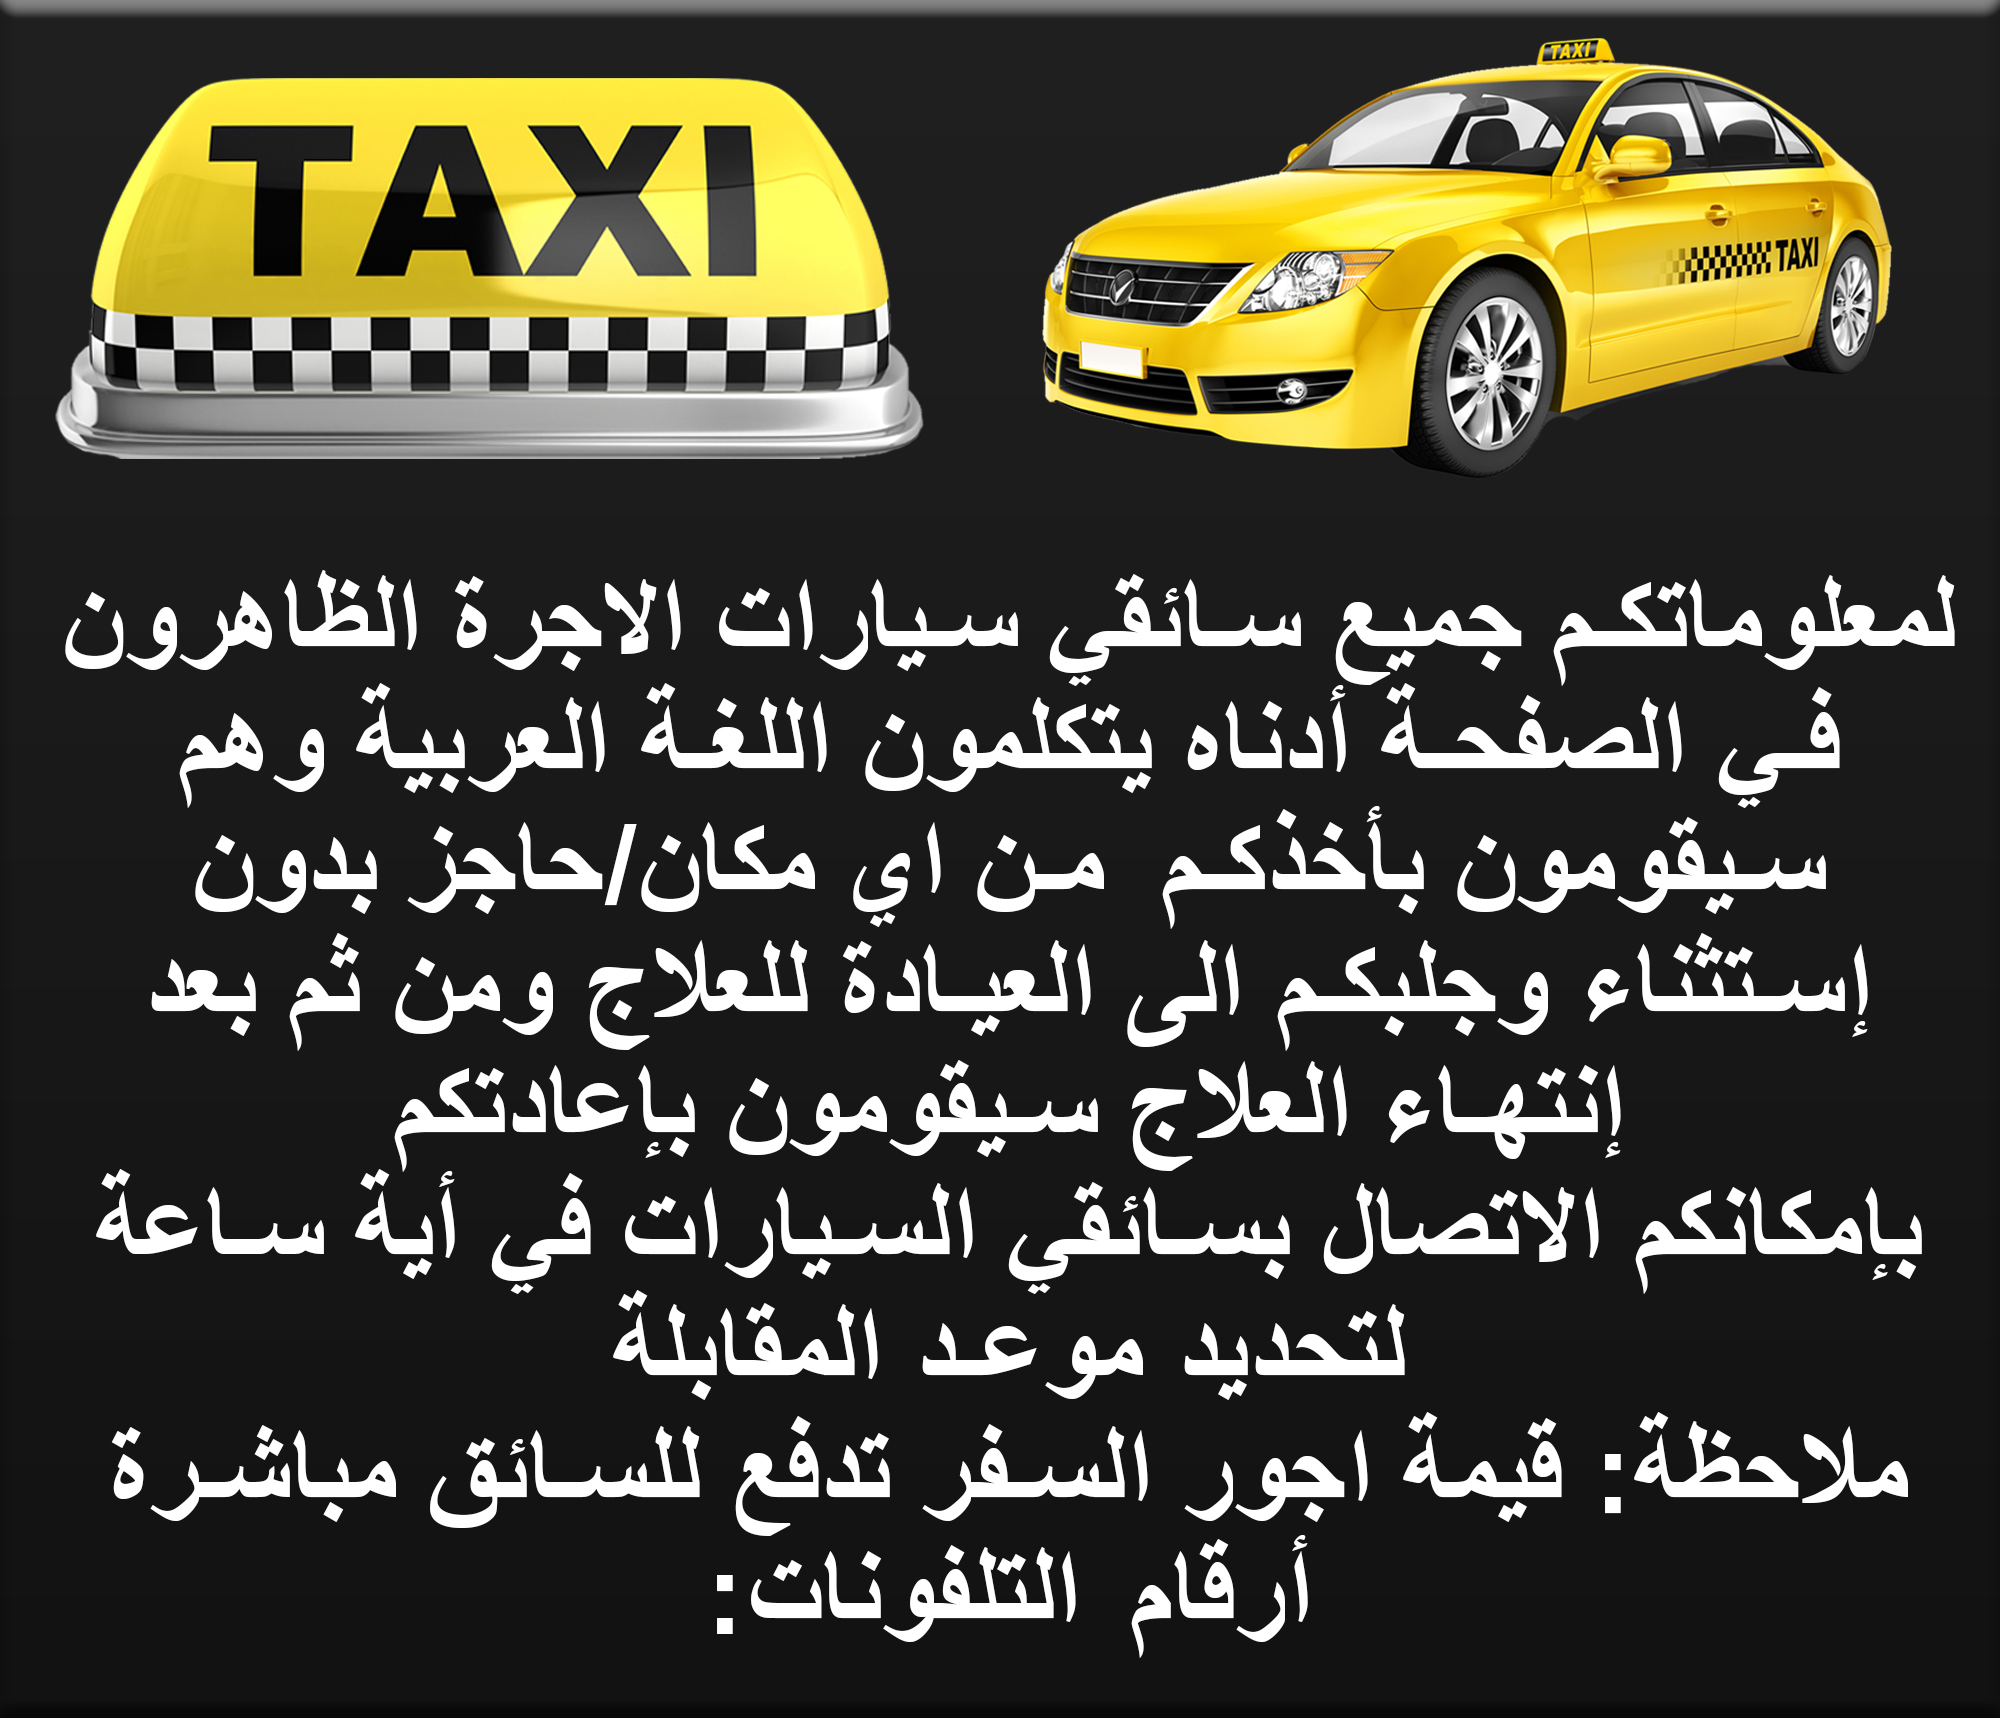 taxi-oren21